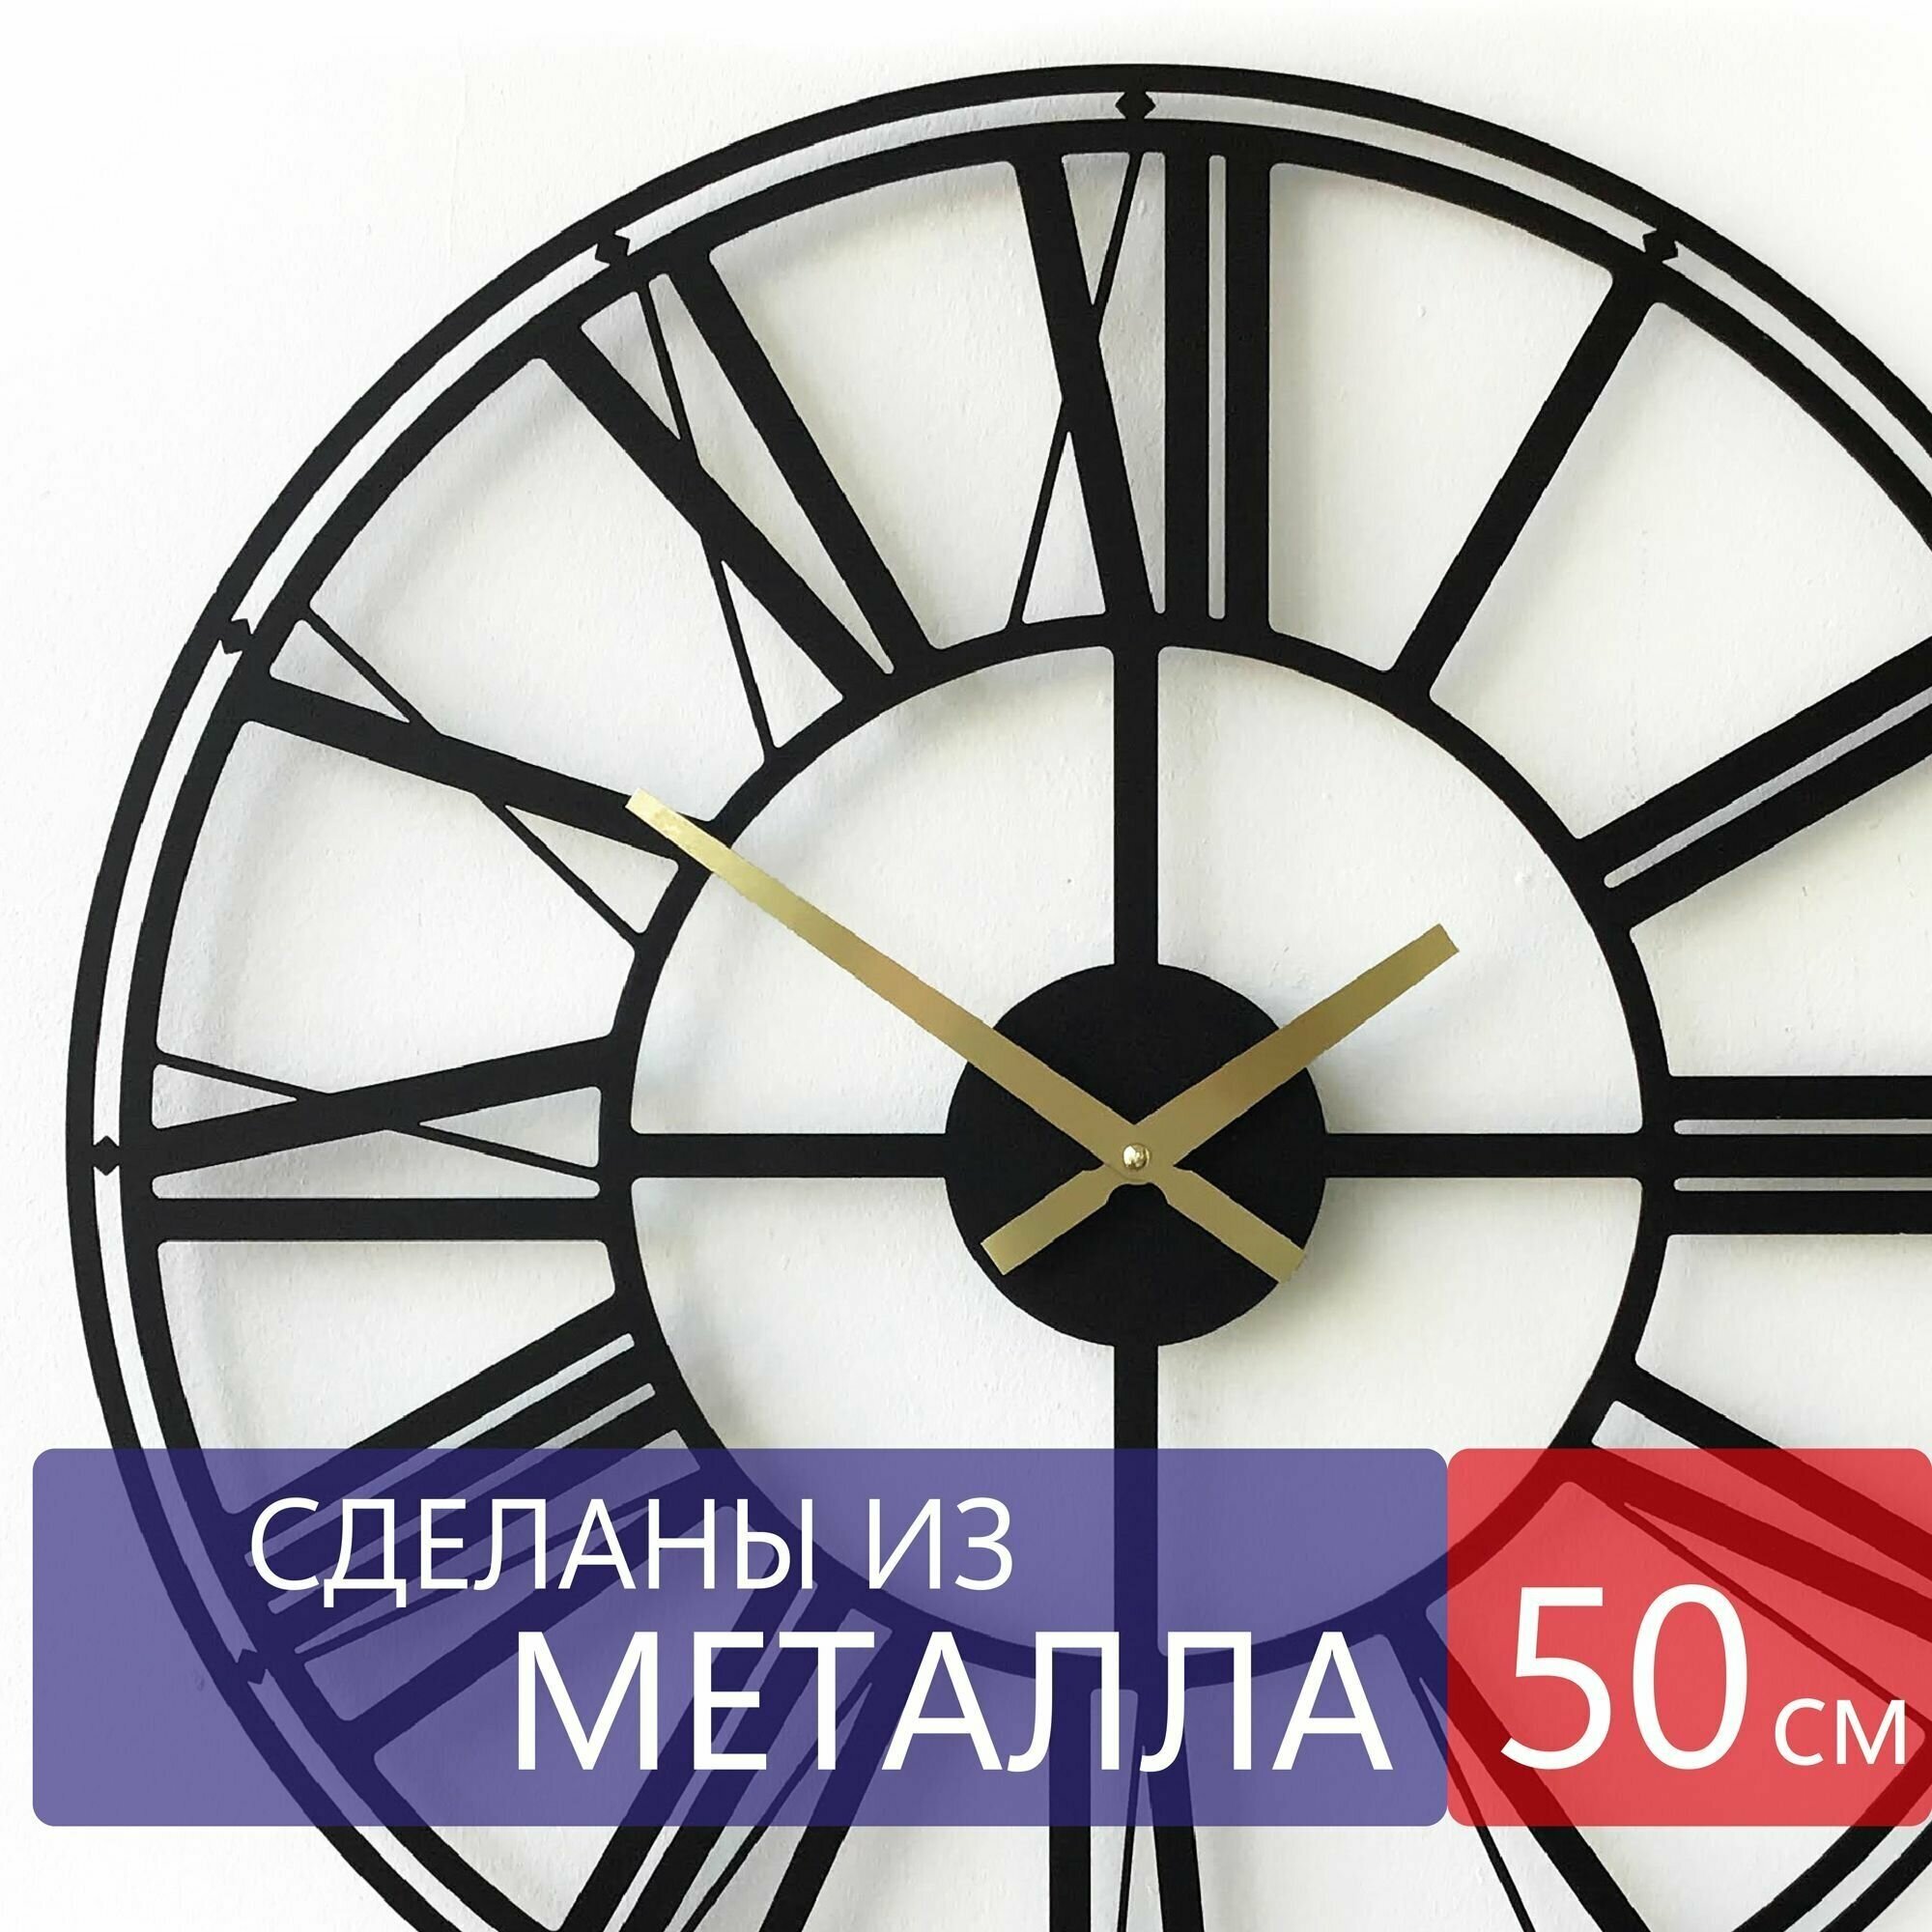 Настенные часы из металла "Columba", бесшумные, большие интерьерные часы, 50см х 50см, чёрные